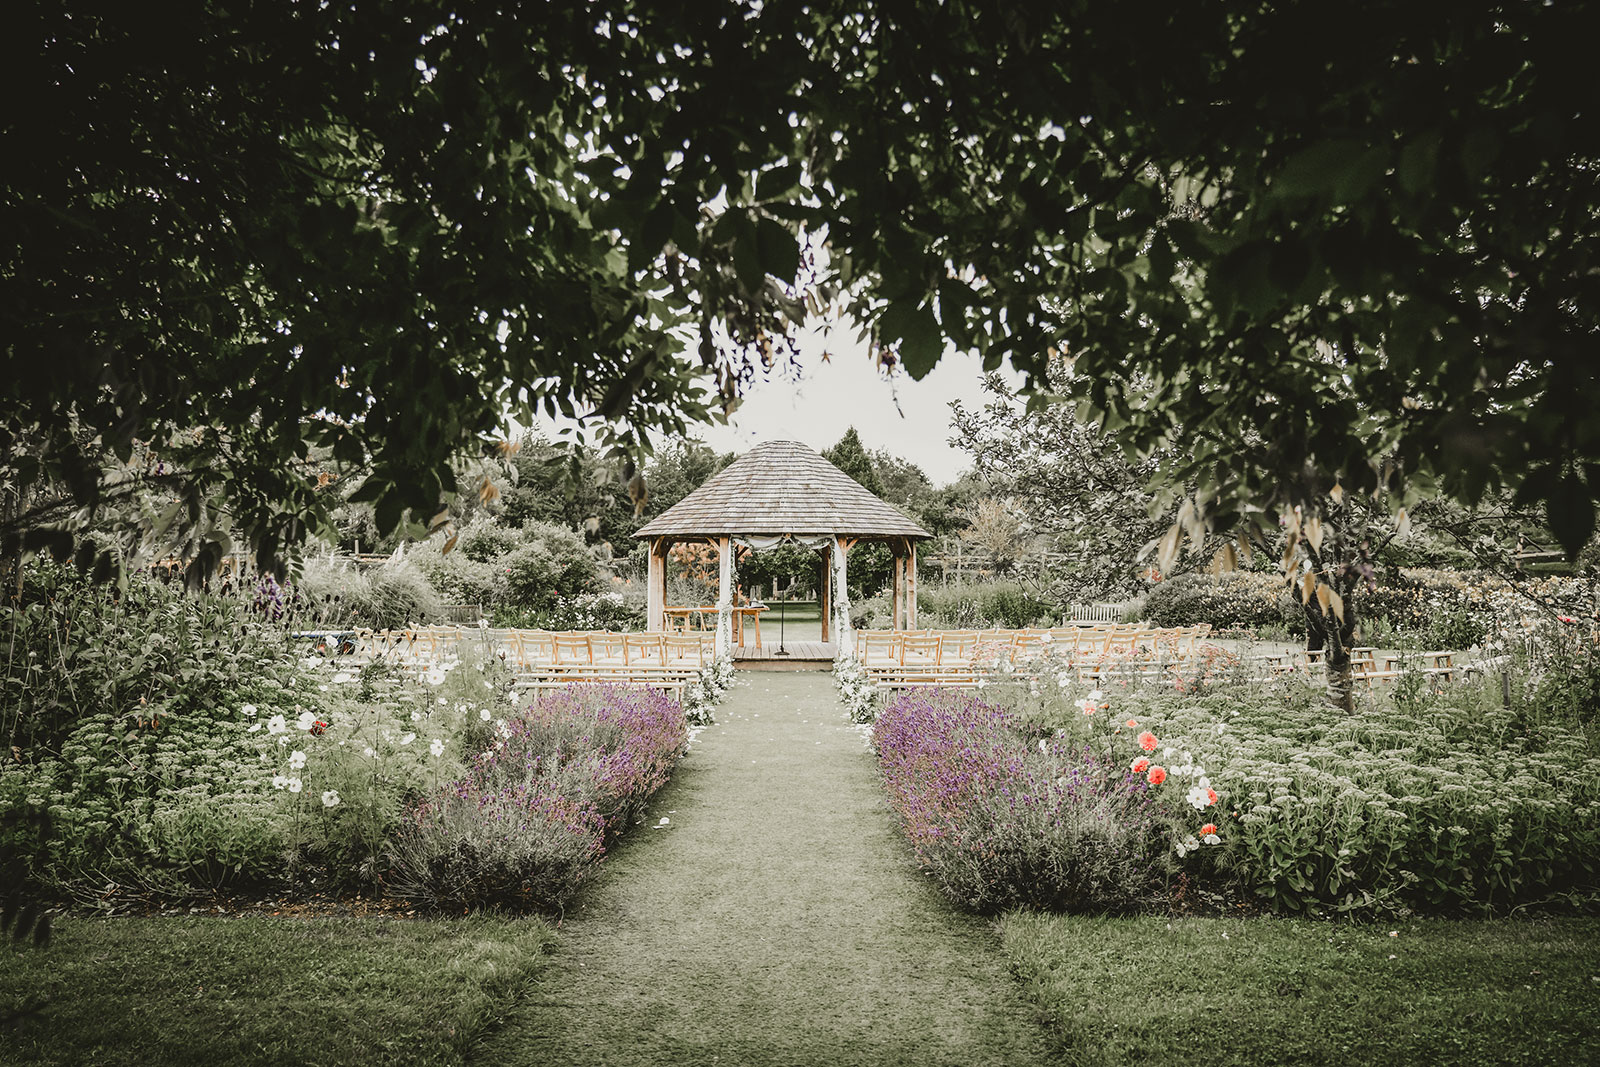 The Gardens Yalding wedding venue